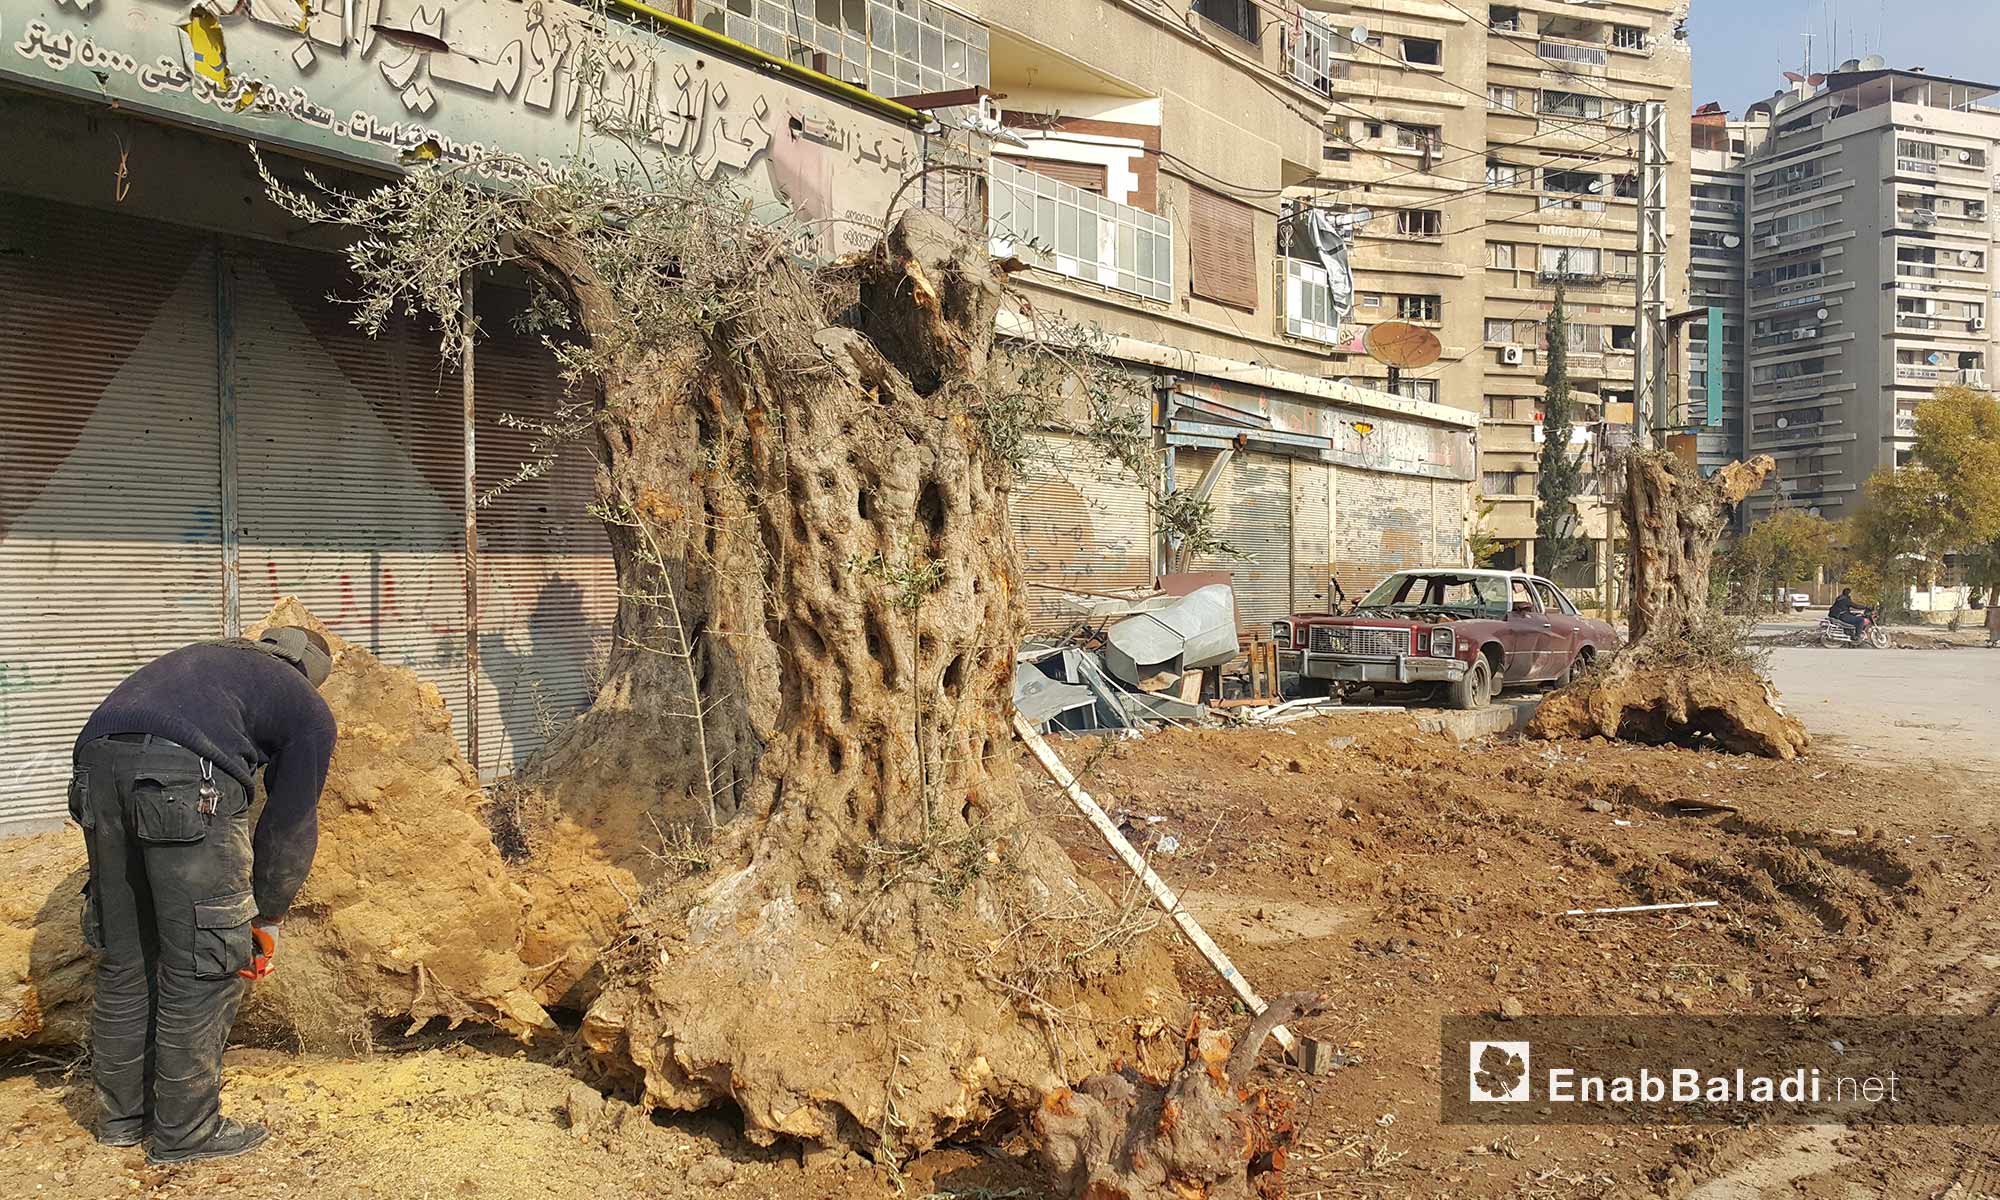 رجل يصنع حطبًا من أشجار زيتون معمرة في مدينة دوما بريف دمشق - 21 كانون الأول 2016 (عنب بلدي)